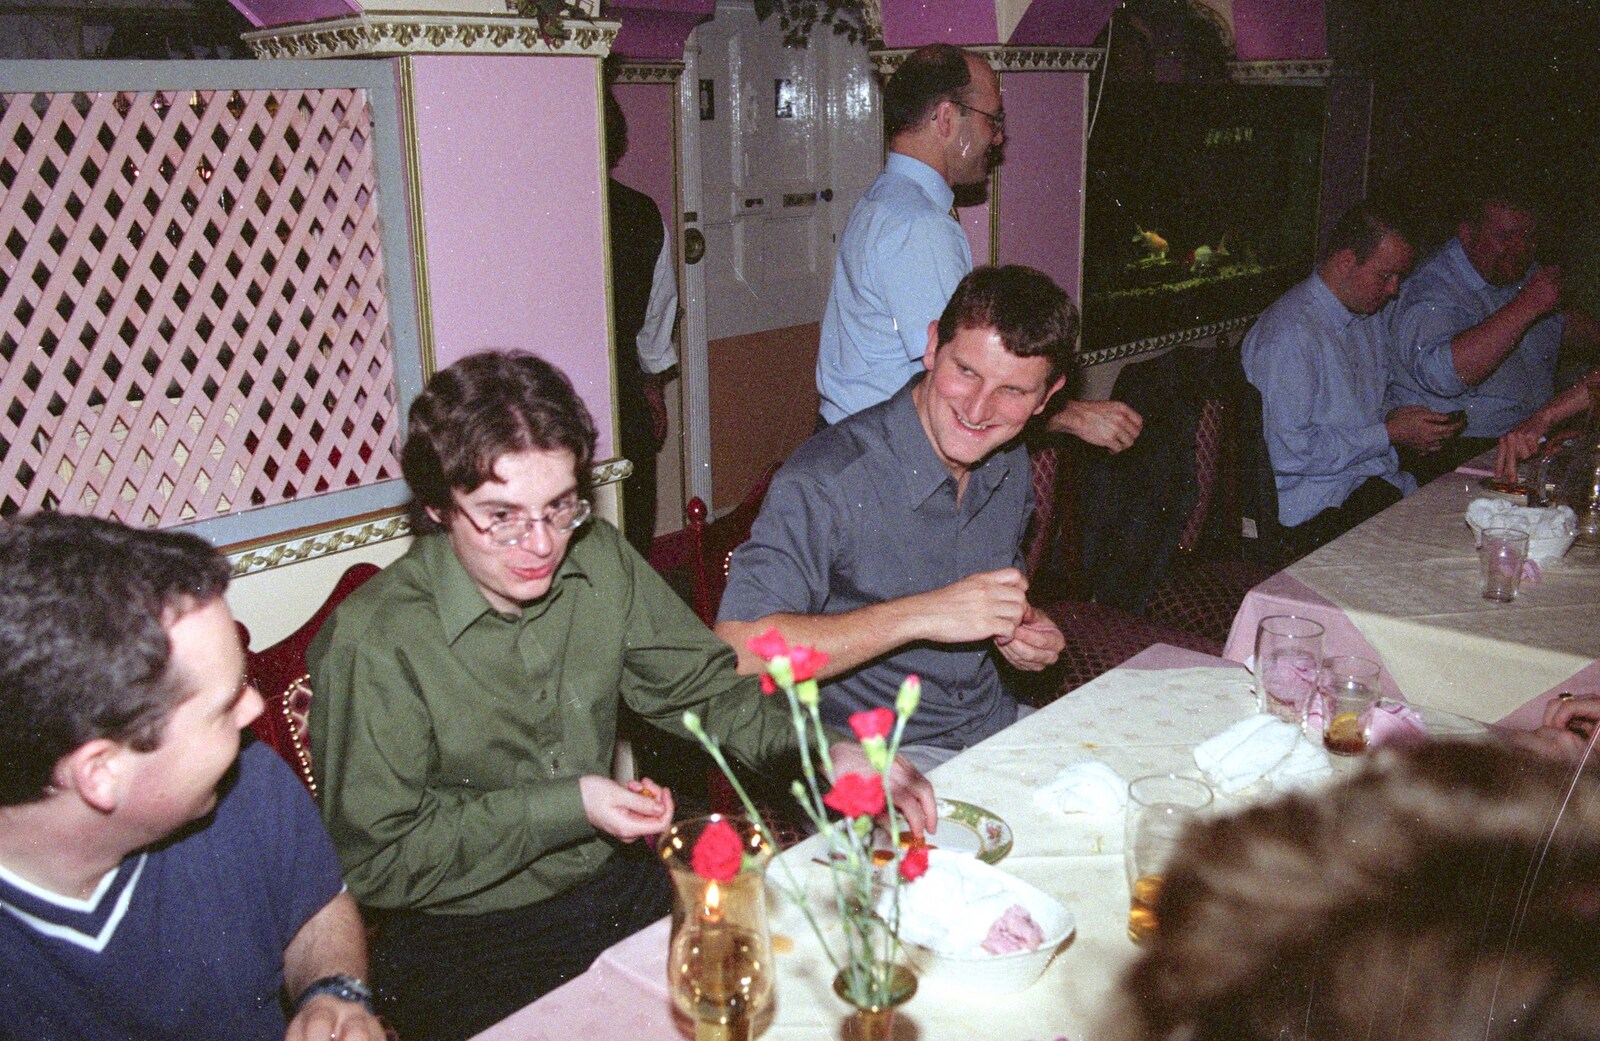 Roy 'Macca P' and Jon play air drums from CISU at the Dhaka Diner, Tacket Street, Ipswich - 25th May 2000